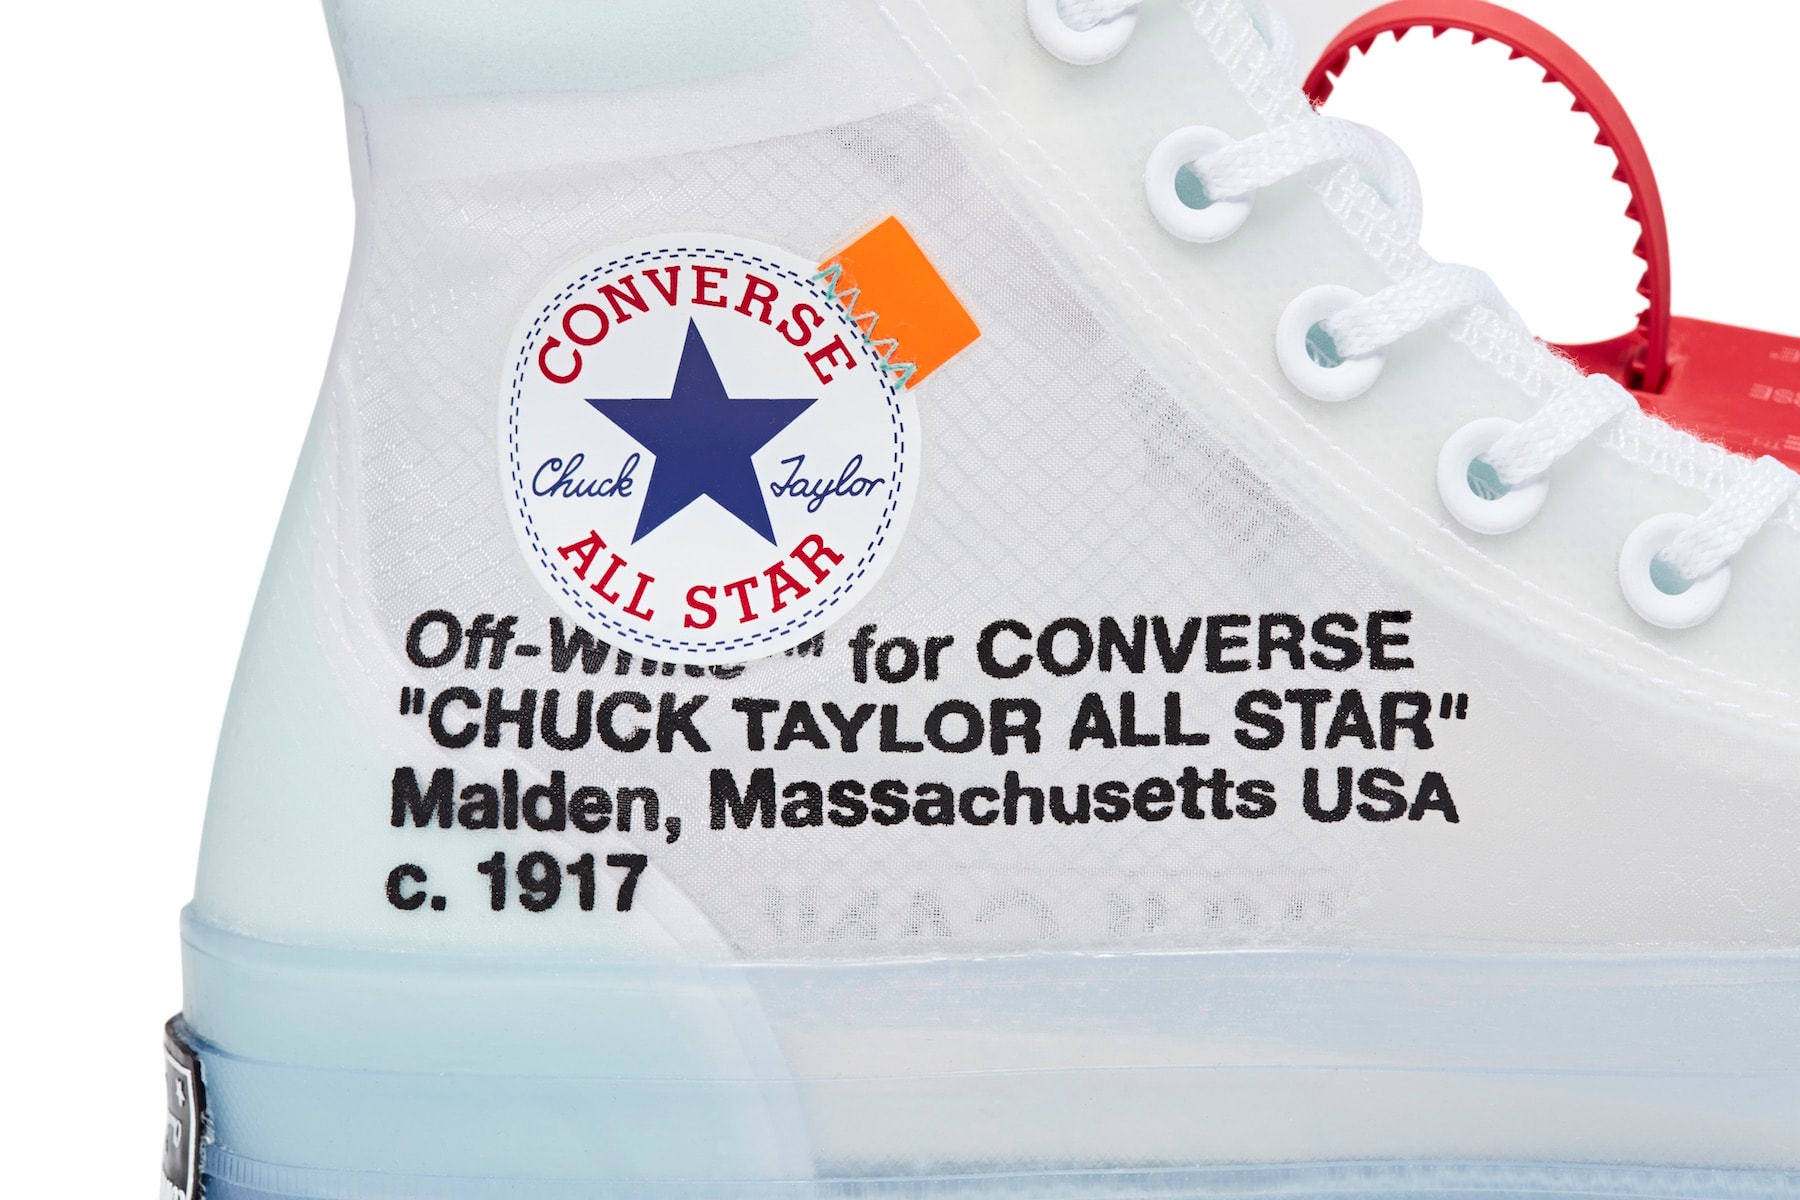 Converse x Virgil Abloh Chuck 70 聯乘鞋款正式發布